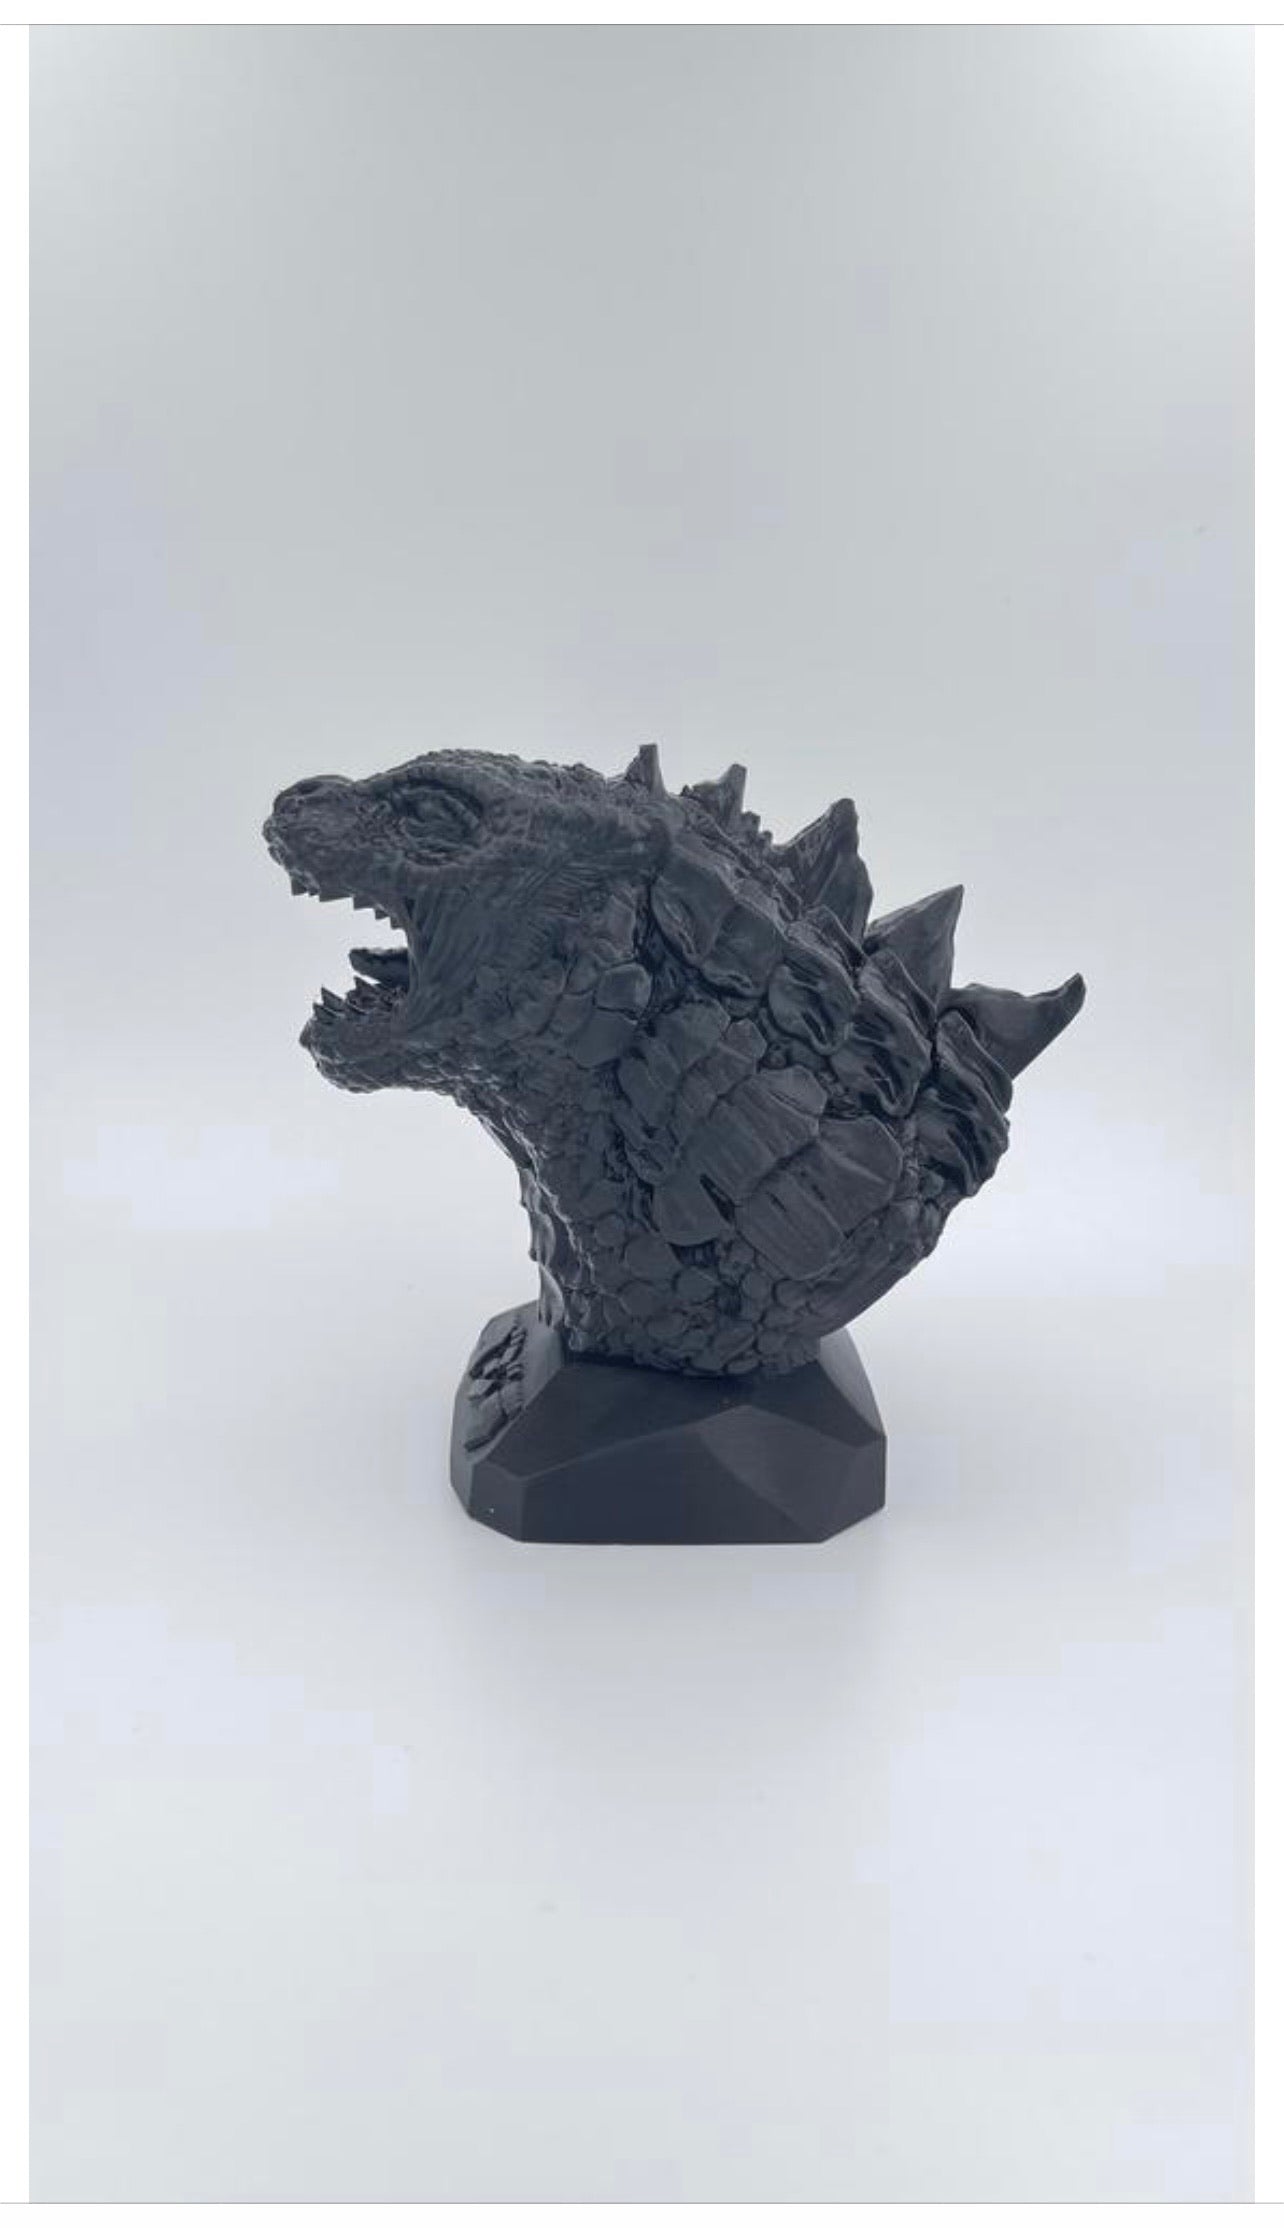 Godzilla King of Monsters